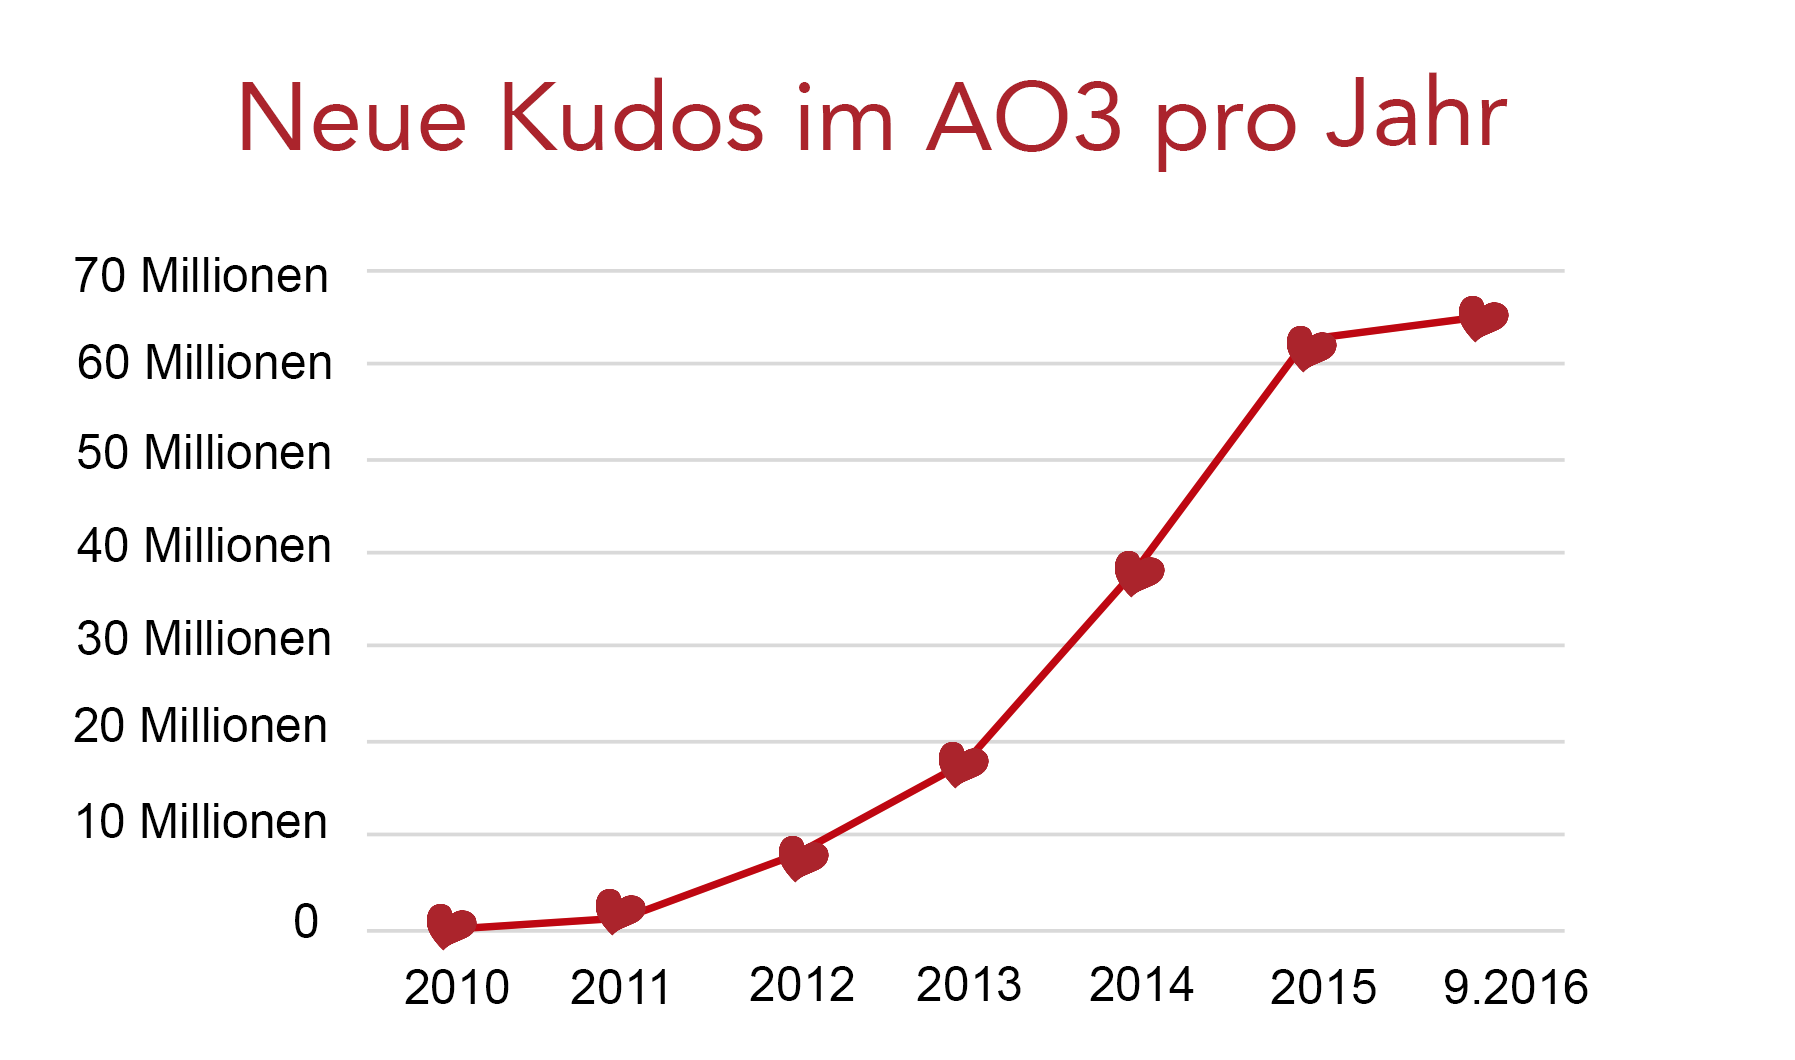 Wachstumskurve der AO3-Kudos, von Null im Jahr 2010 auf über 60 Millionen im Septermber 2016.